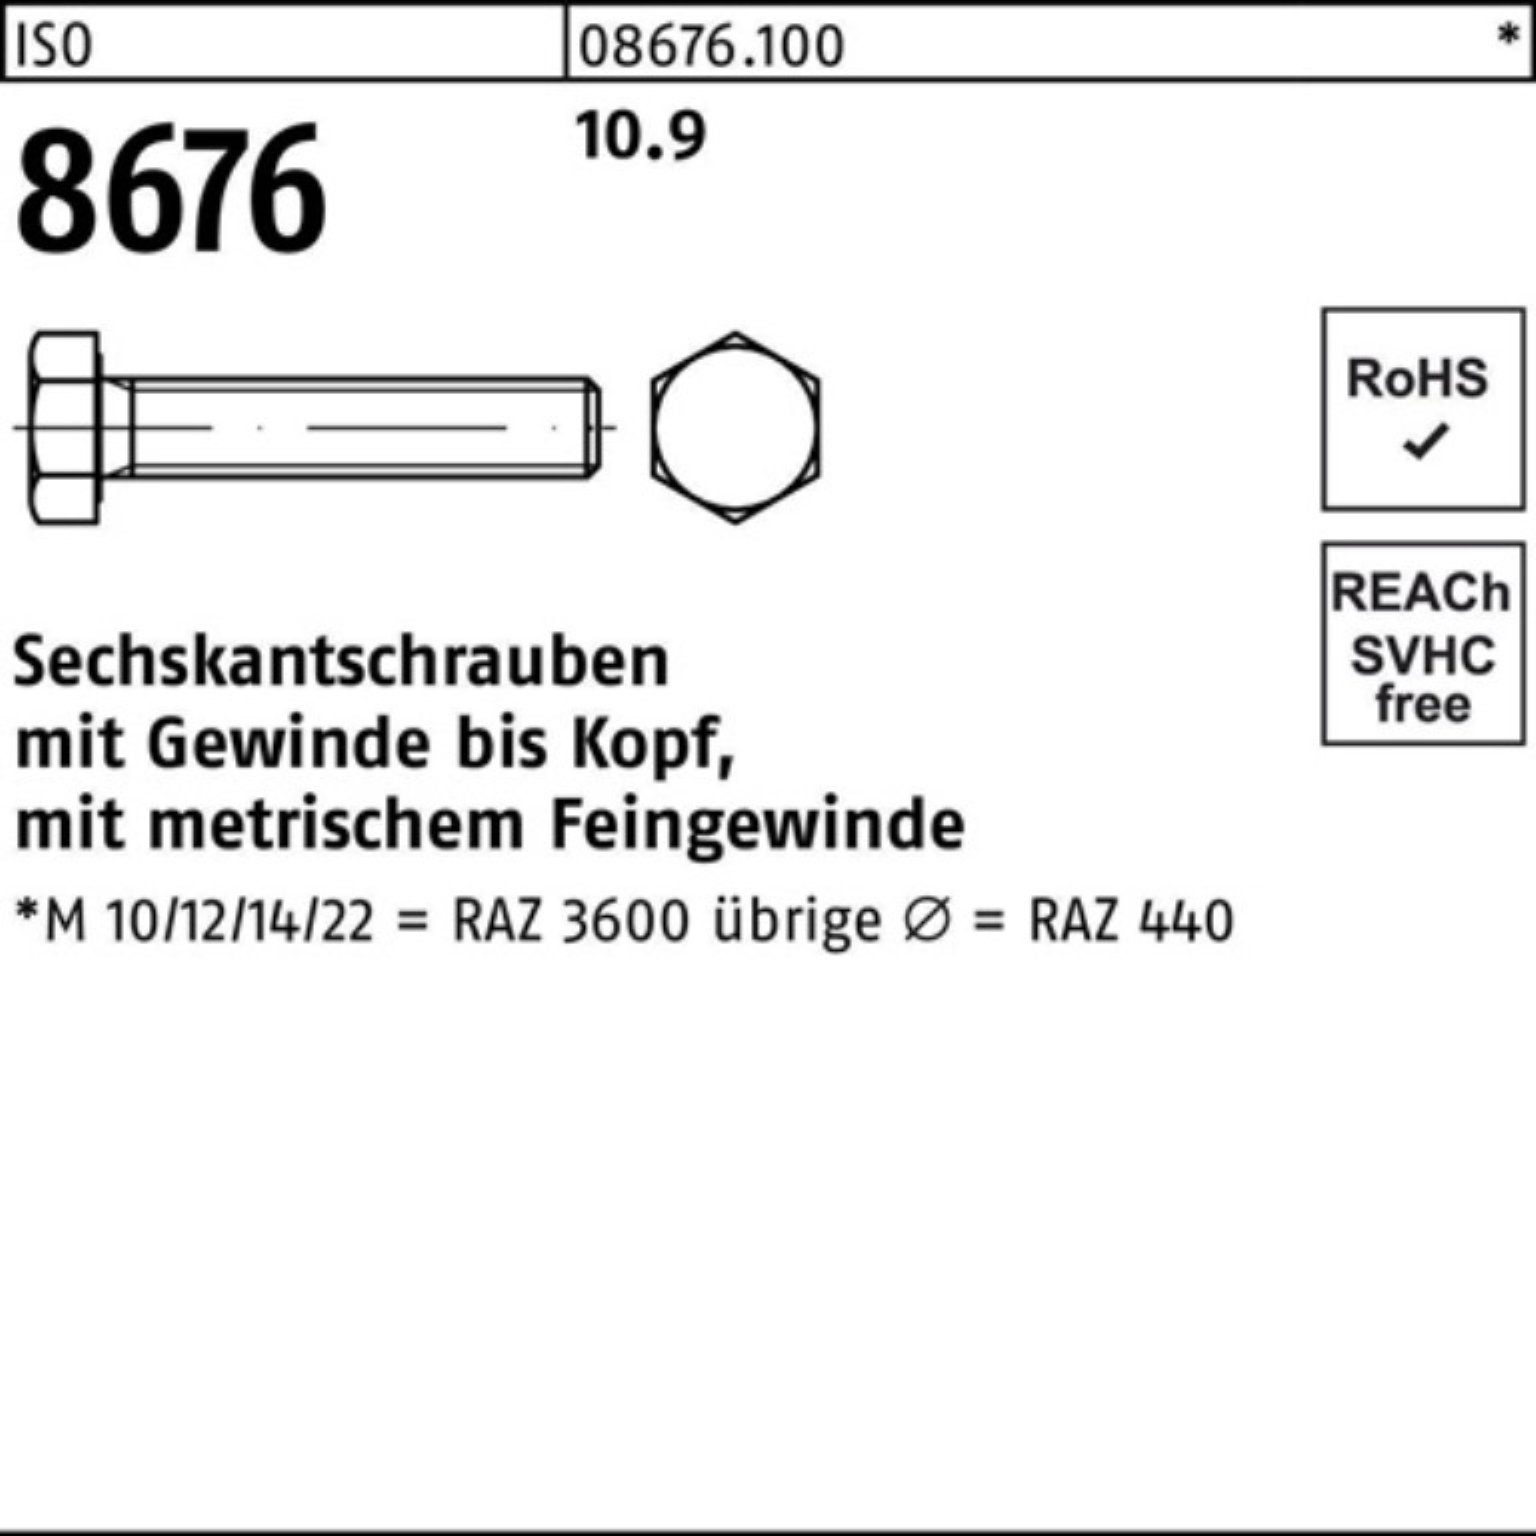 VG Reyher Sechskantschraube 200er ISO Sechskantschraube Stück Pack 10.9 M10x1,25x 8676 16 200